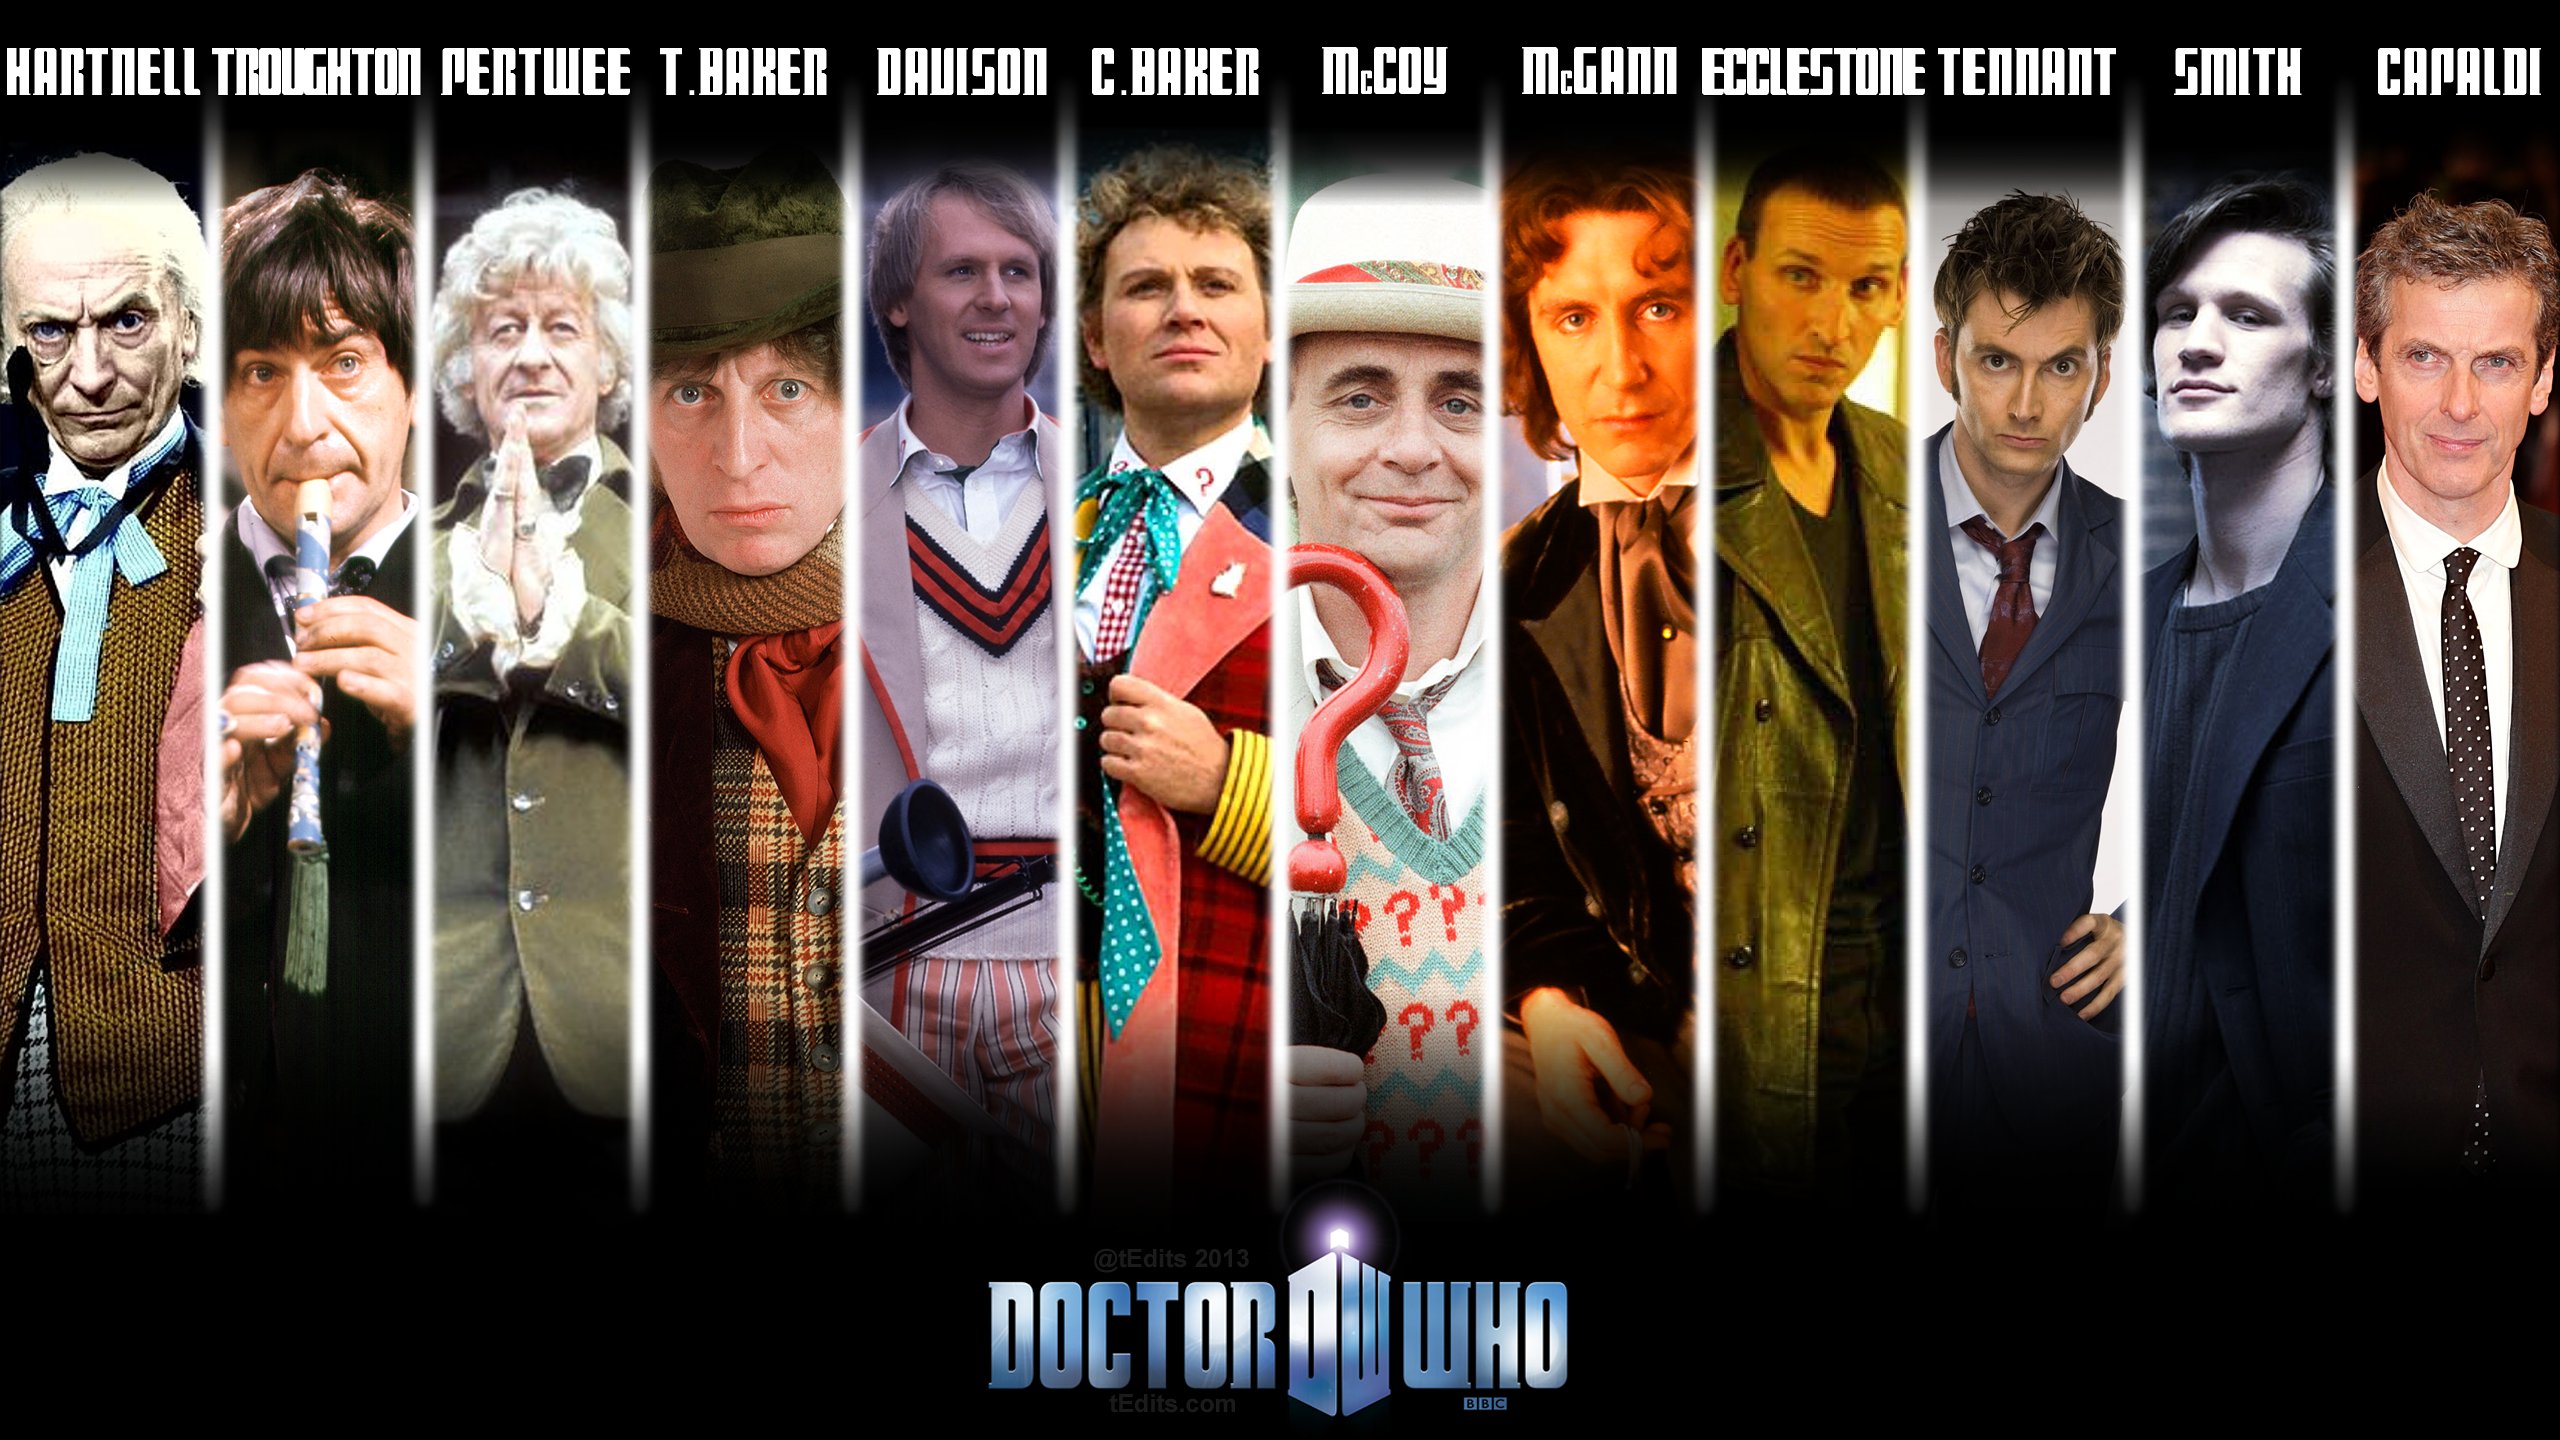 doctor, Who, Bbc, Sci fi, Futuristic, Series, Comedy, Adventure, Drama, 1dwho, Poster Wallpaper